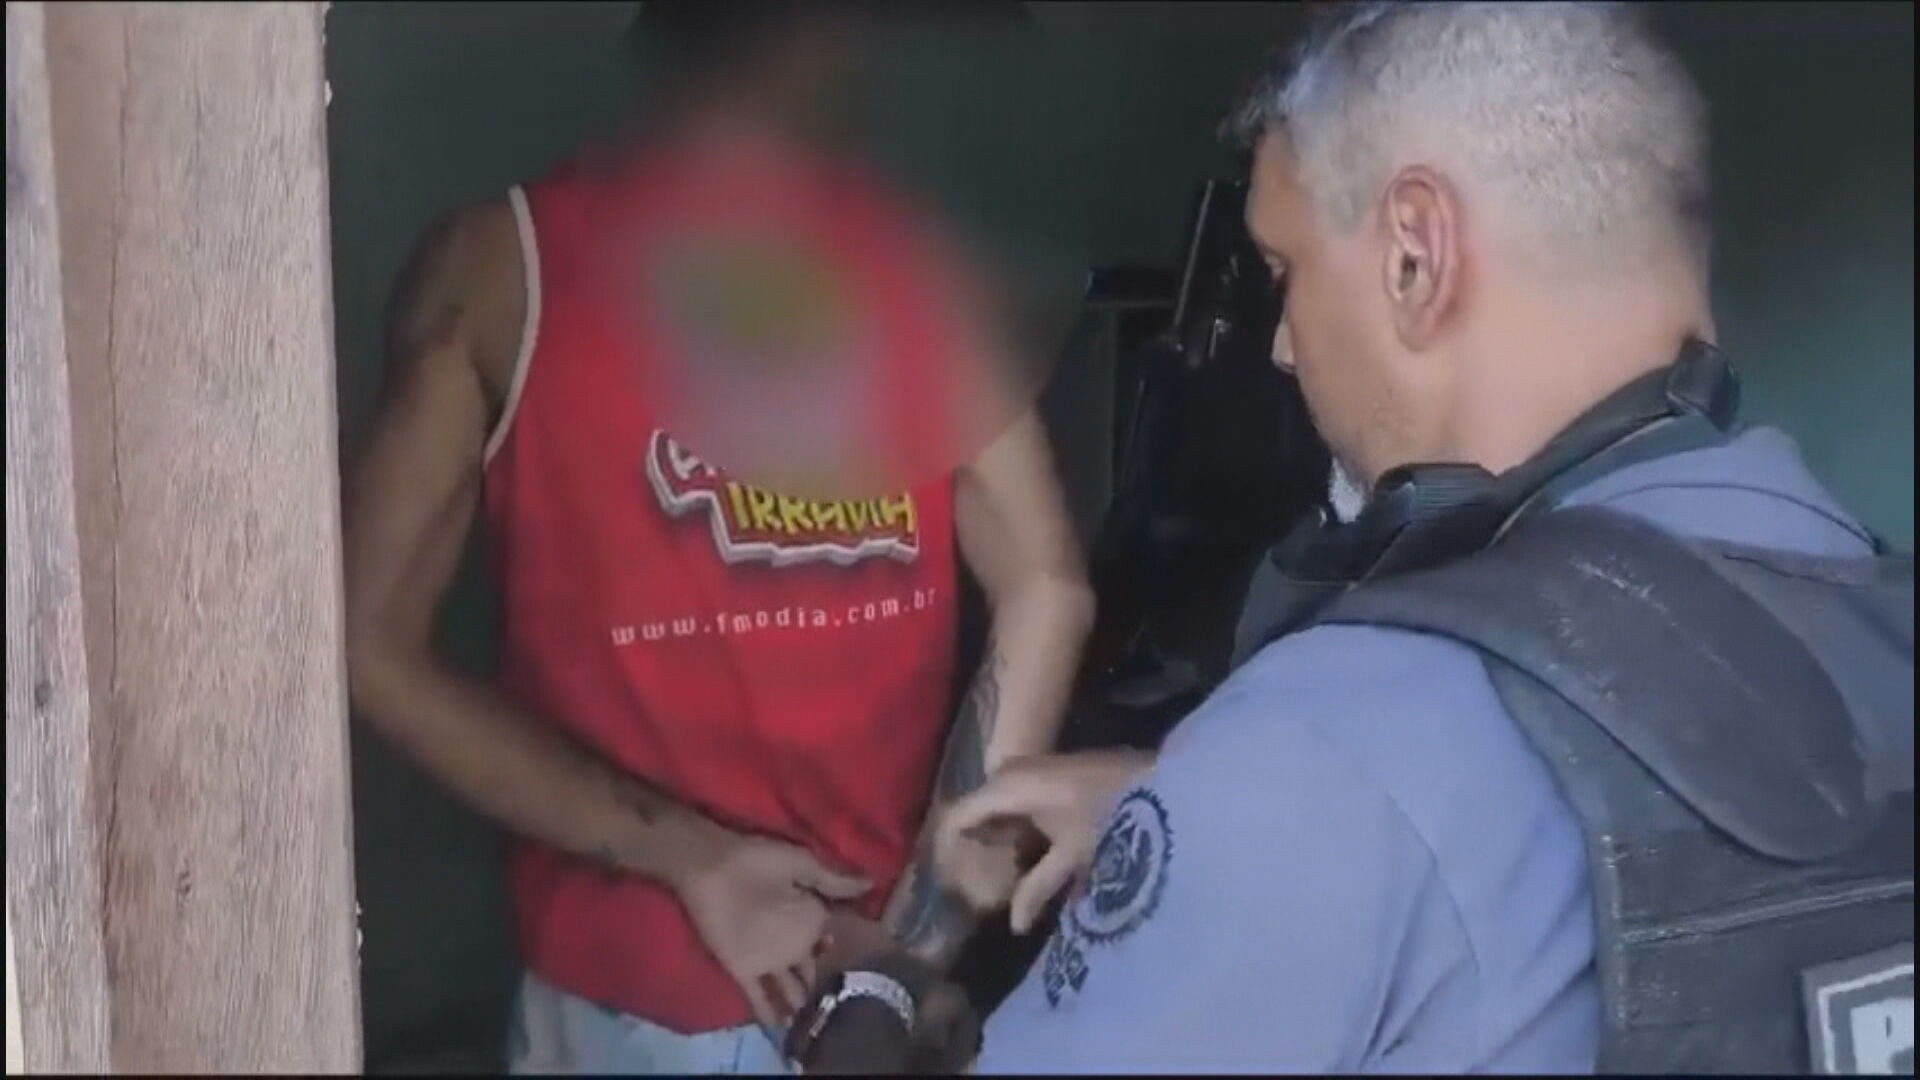 Polícia prende homem suspeito de levar menores para o tráfico de drogas em Niterói